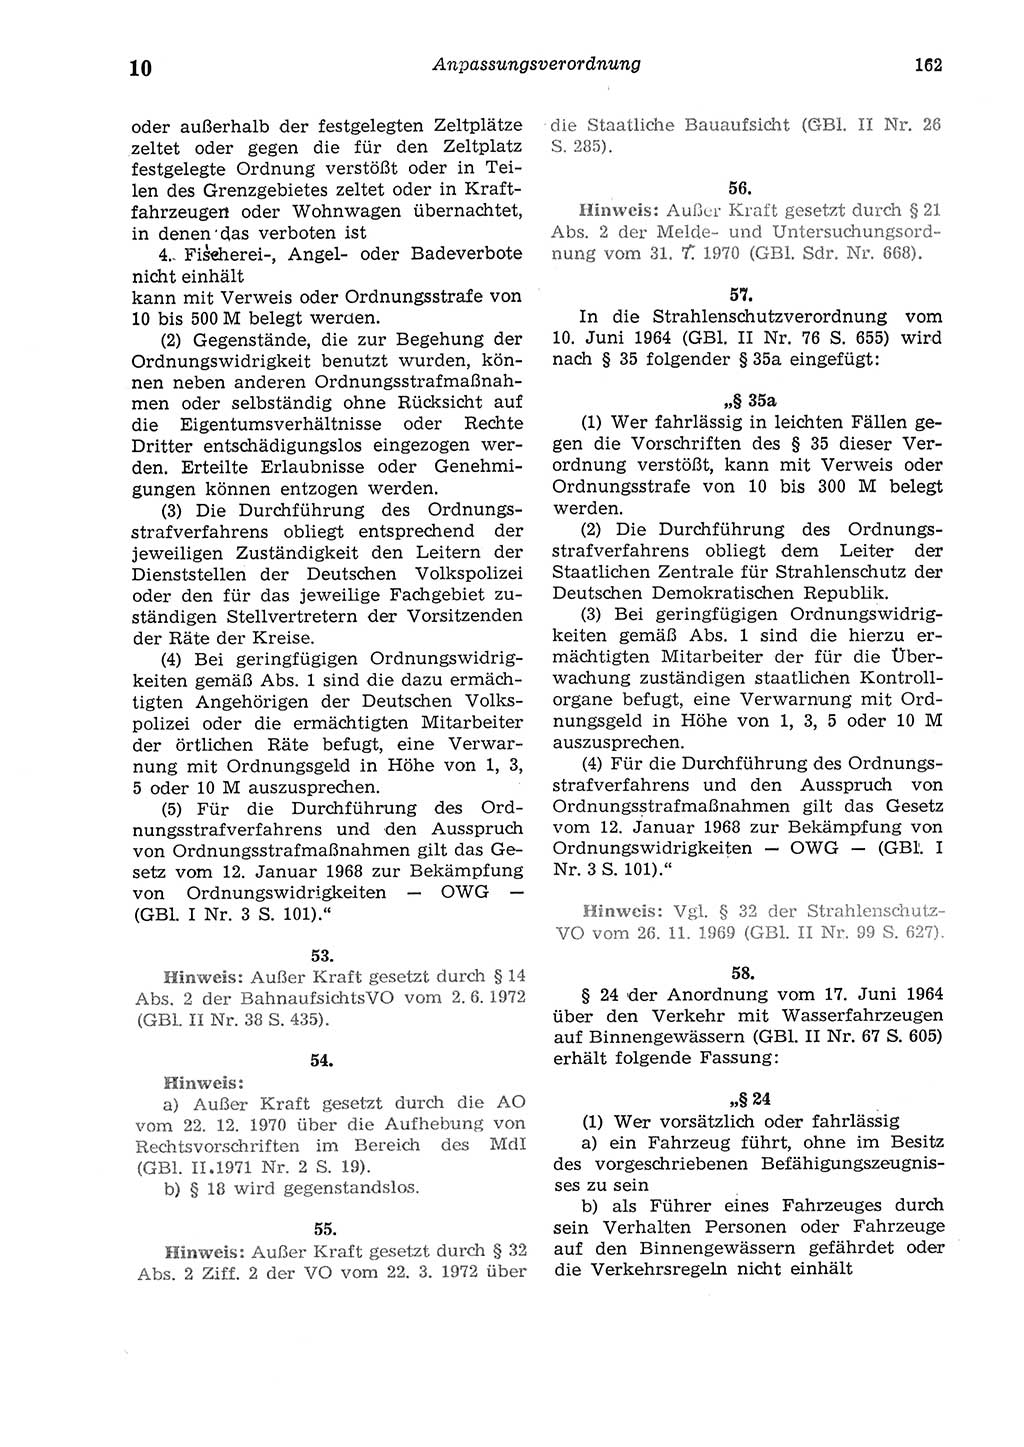 Strafgesetzbuch (StGB) der Deutschen Demokratischen Republik (DDR) und angrenzende Gesetze und Bestimmungen 1975, Seite 162 (StGB DDR Ges. Best. 1975, S. 162)